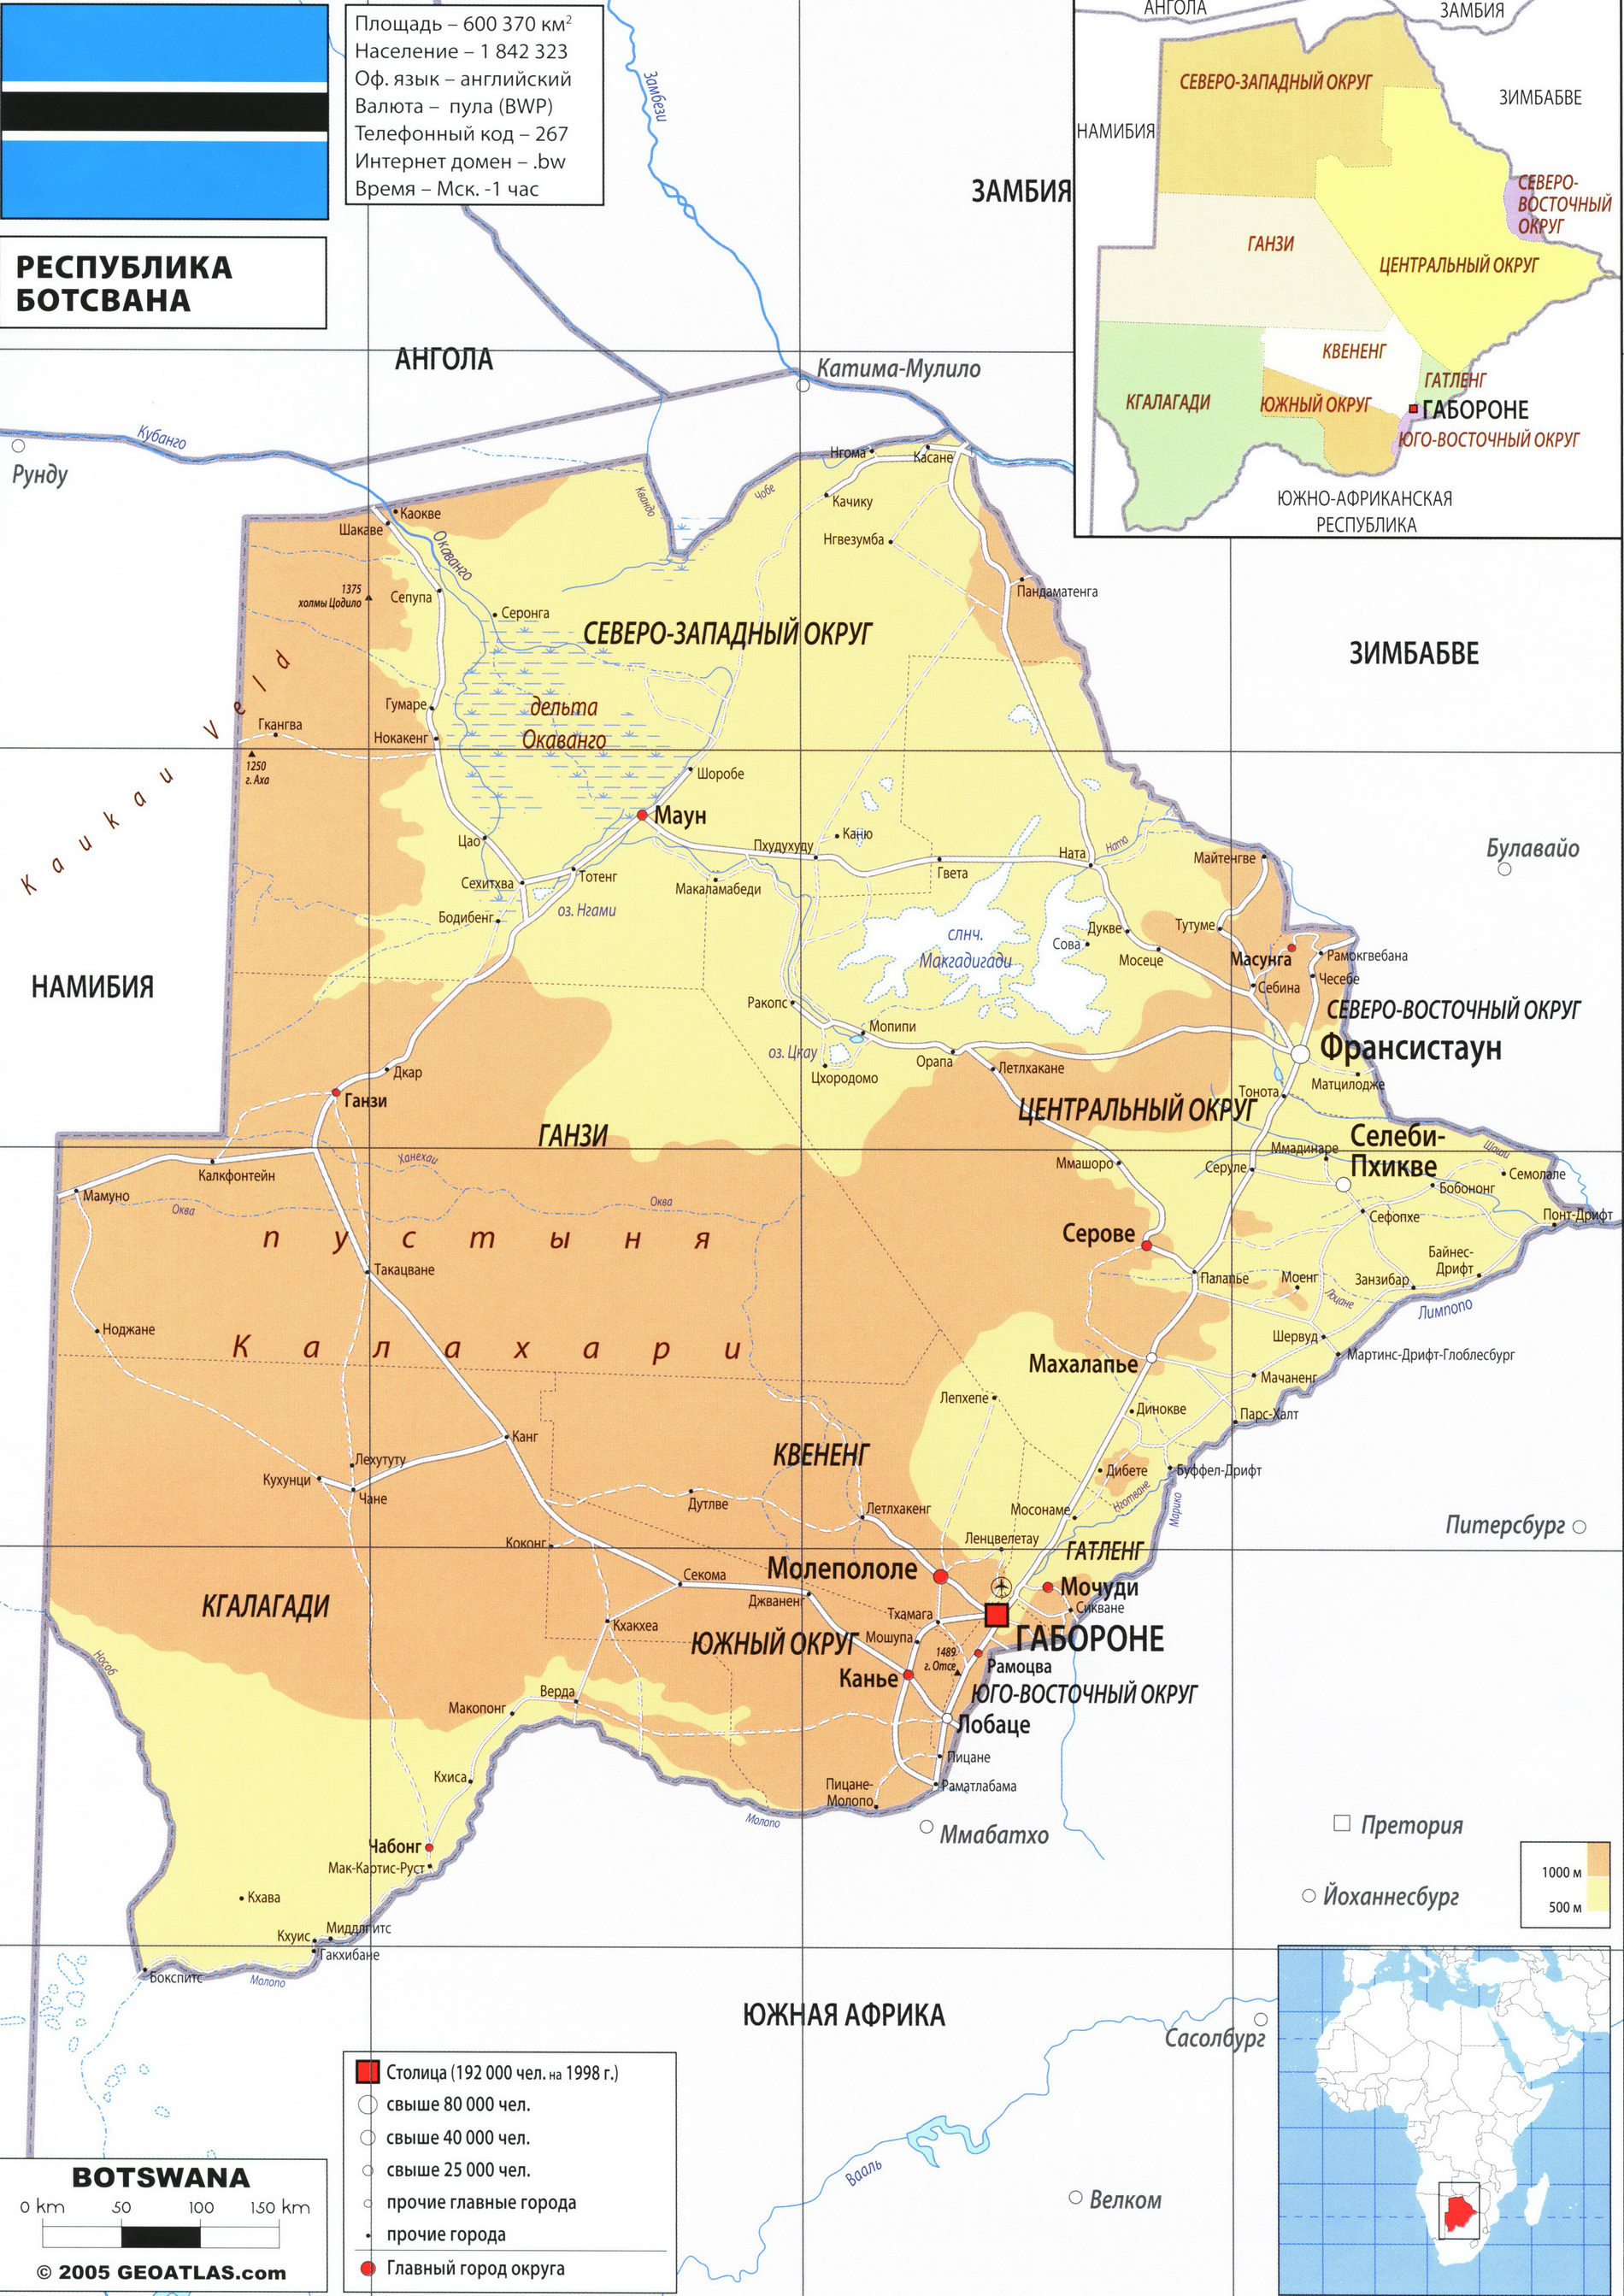 Ботсвана карта на русском языке